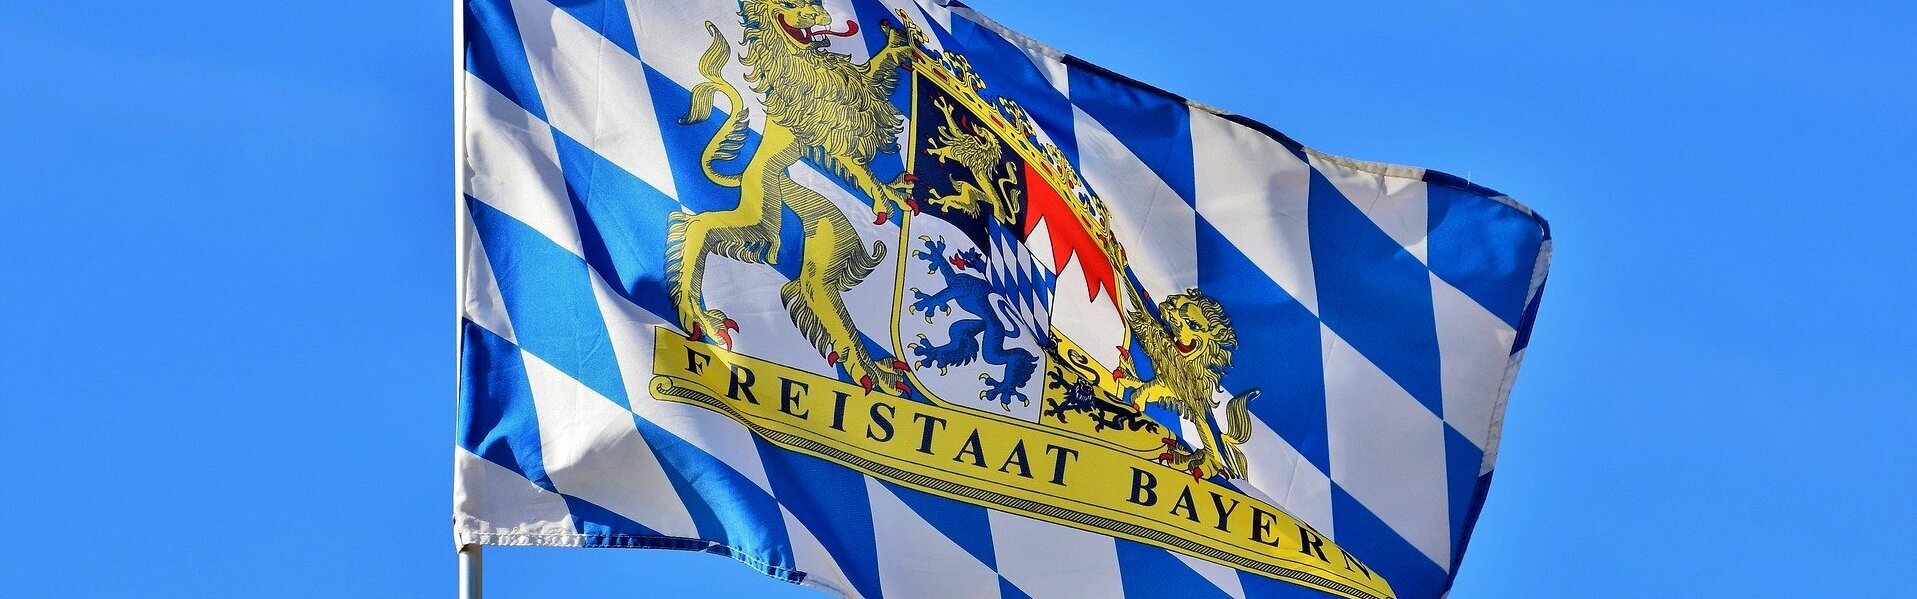 DAs Bild zeigt die Bayernflagge